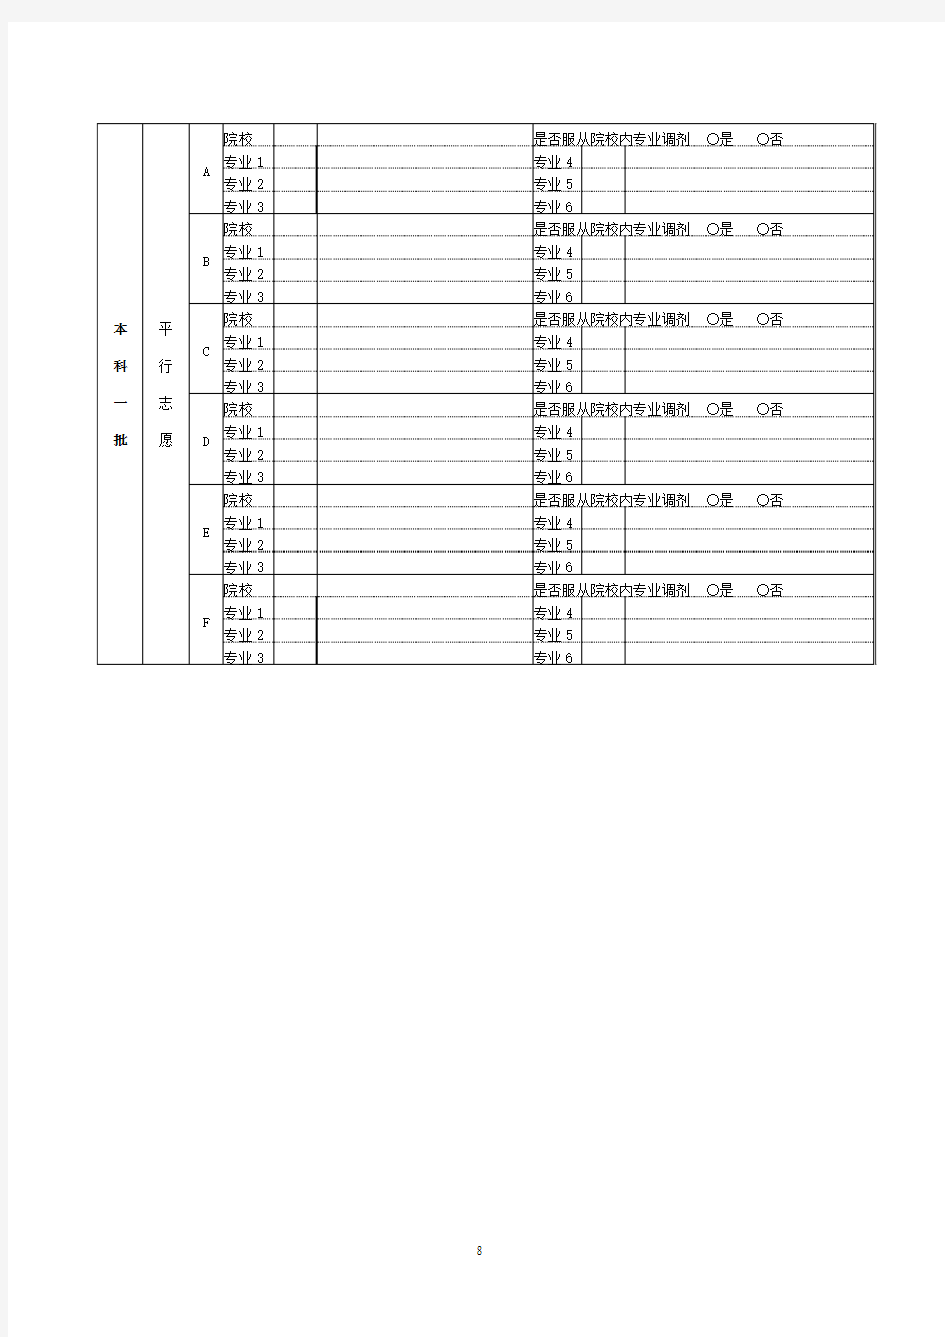 北京2018年高考志愿填报表